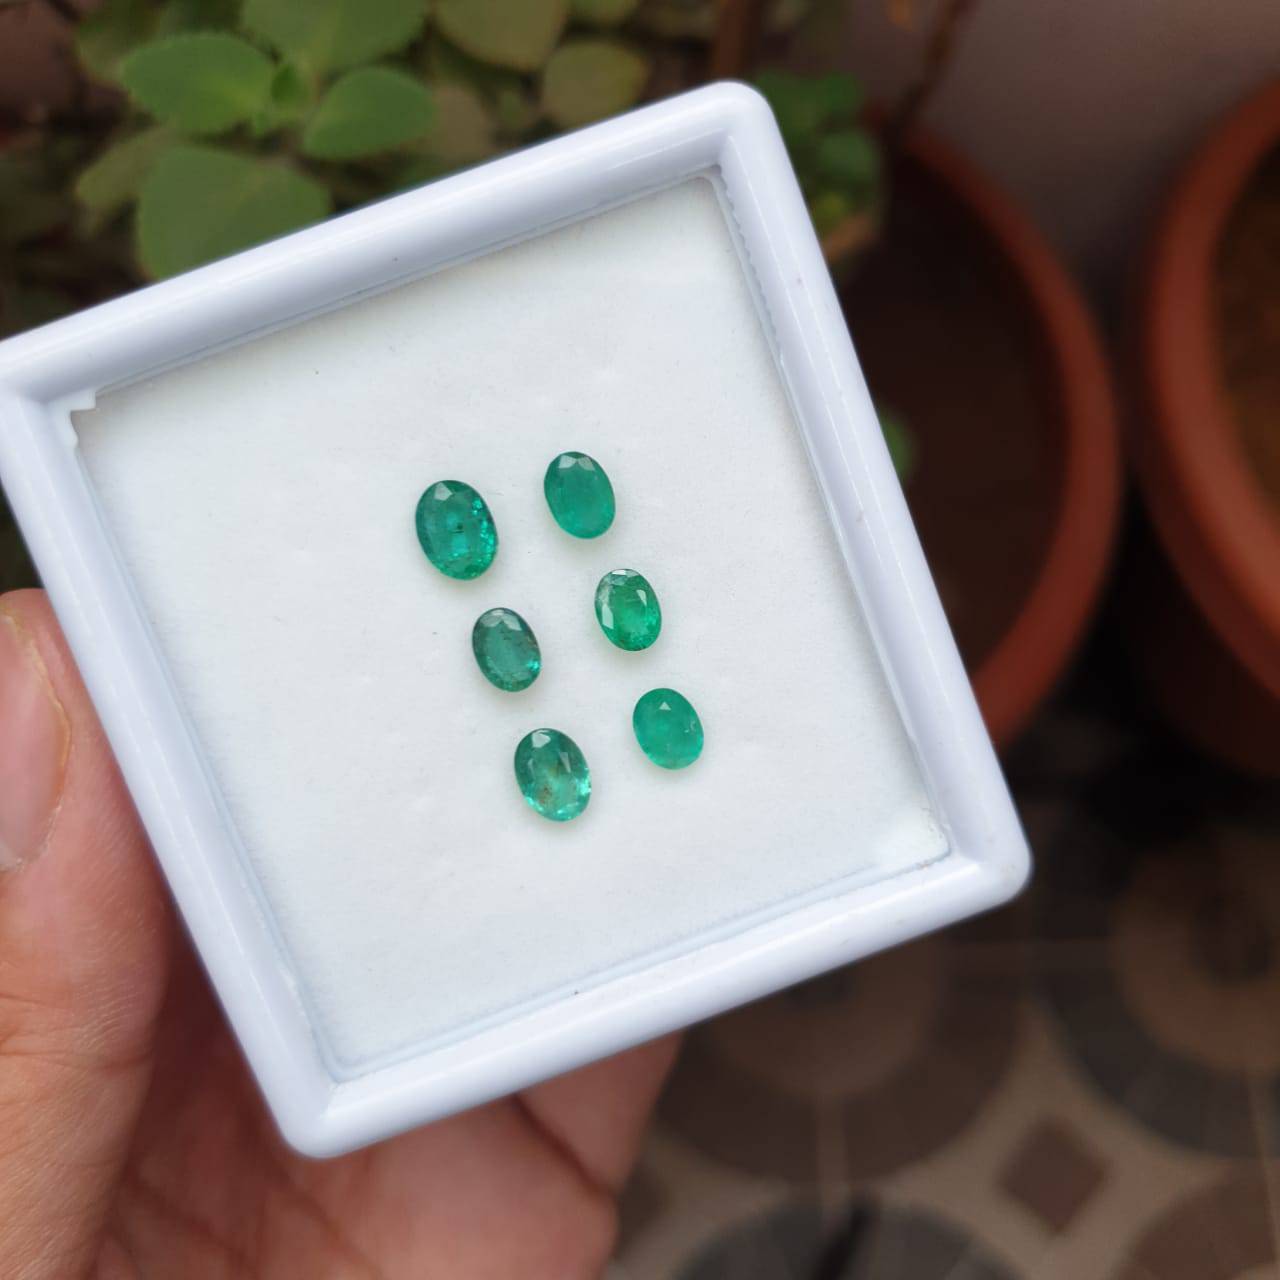 6 Pcs Natural Emerald Lot- Zambian Mined Emerald Cut 6-7mm| 4.3 Cts|Untreated Certified - The LabradoriteKing